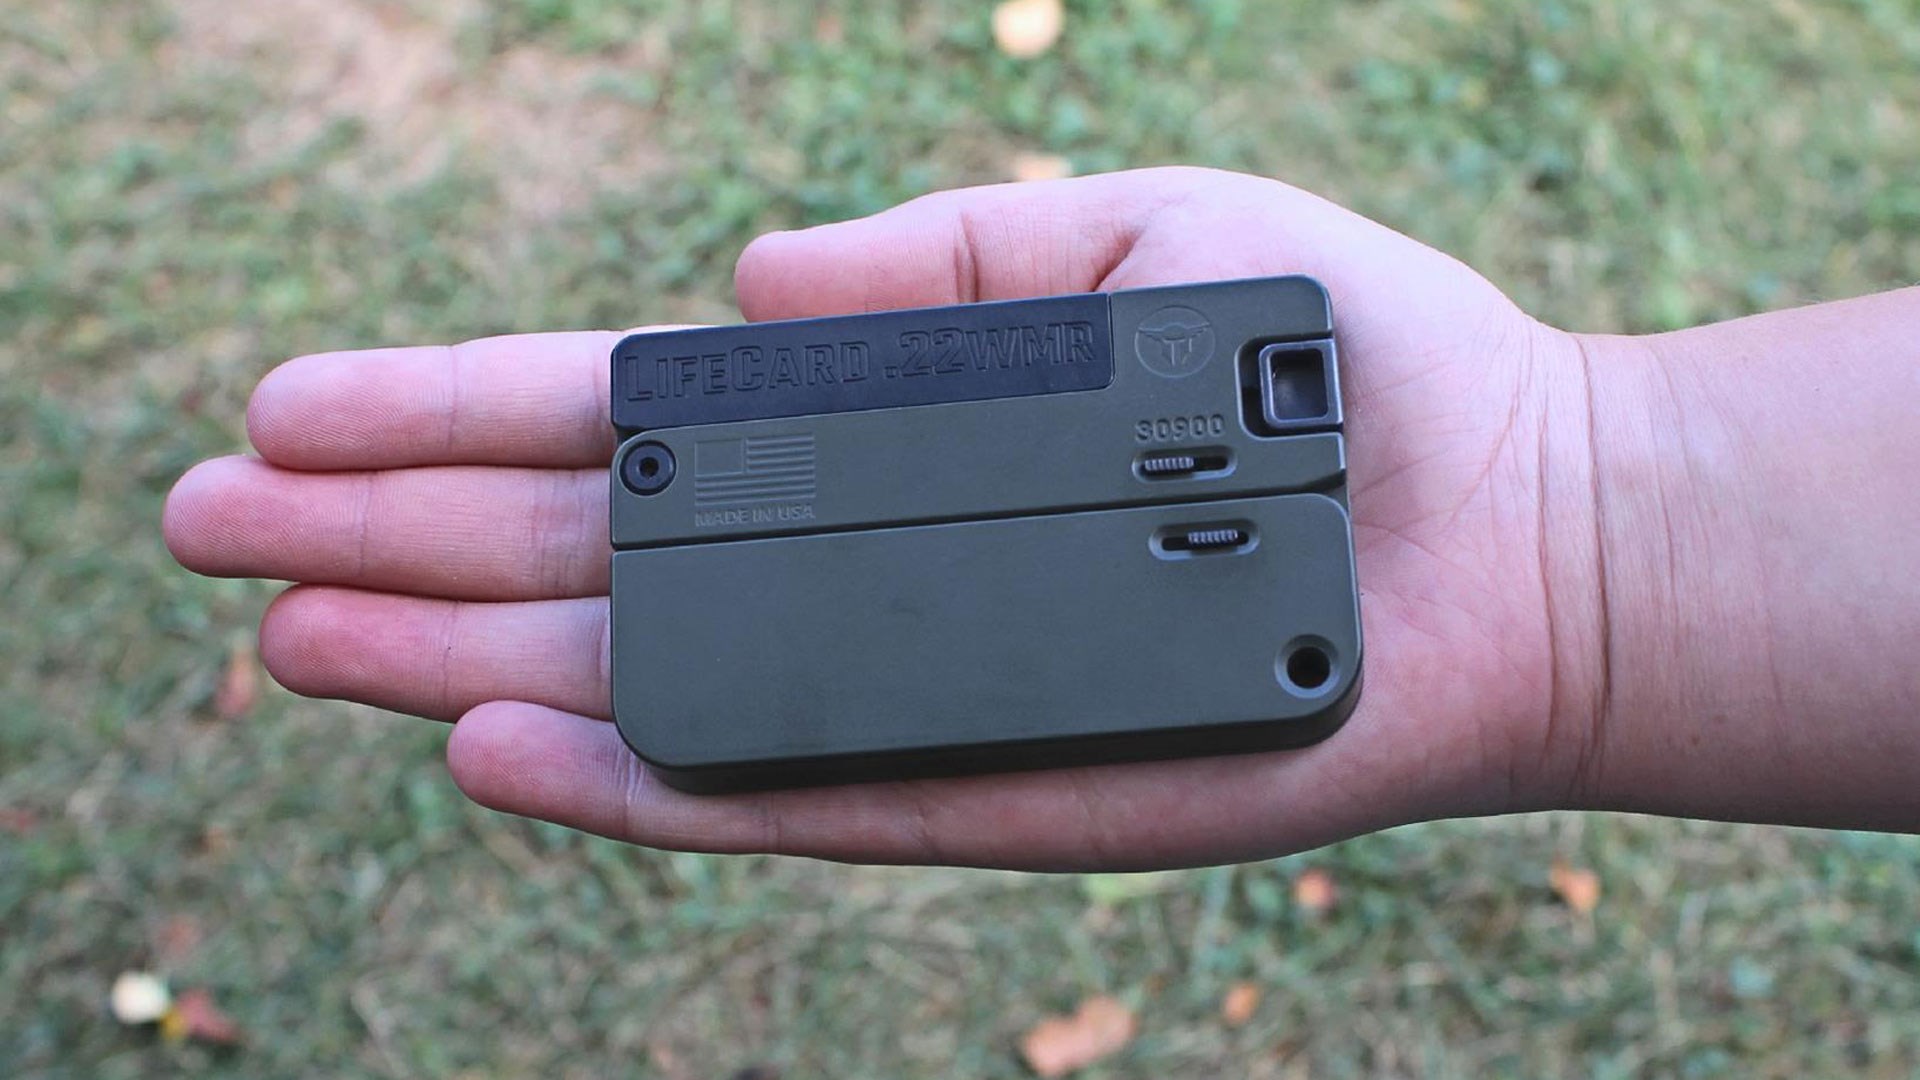 LIfecard folding pistol 22 MAG WMR gun in hand outdoors grass background